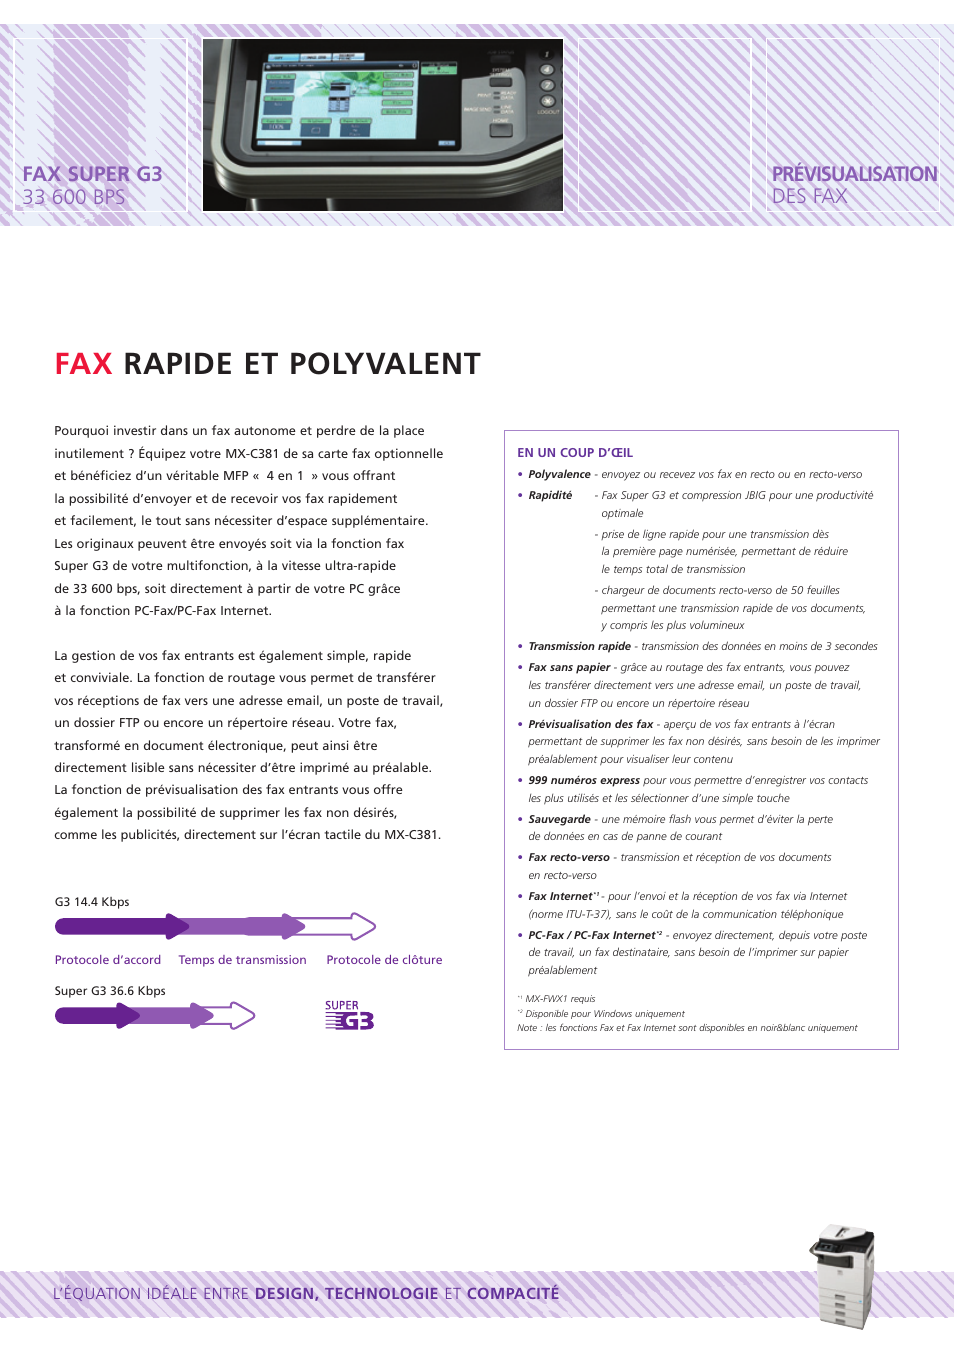 Fax rapide et polyvalent | Sharp MX-C381 Manuel d'utilisation | Page 7 / 12